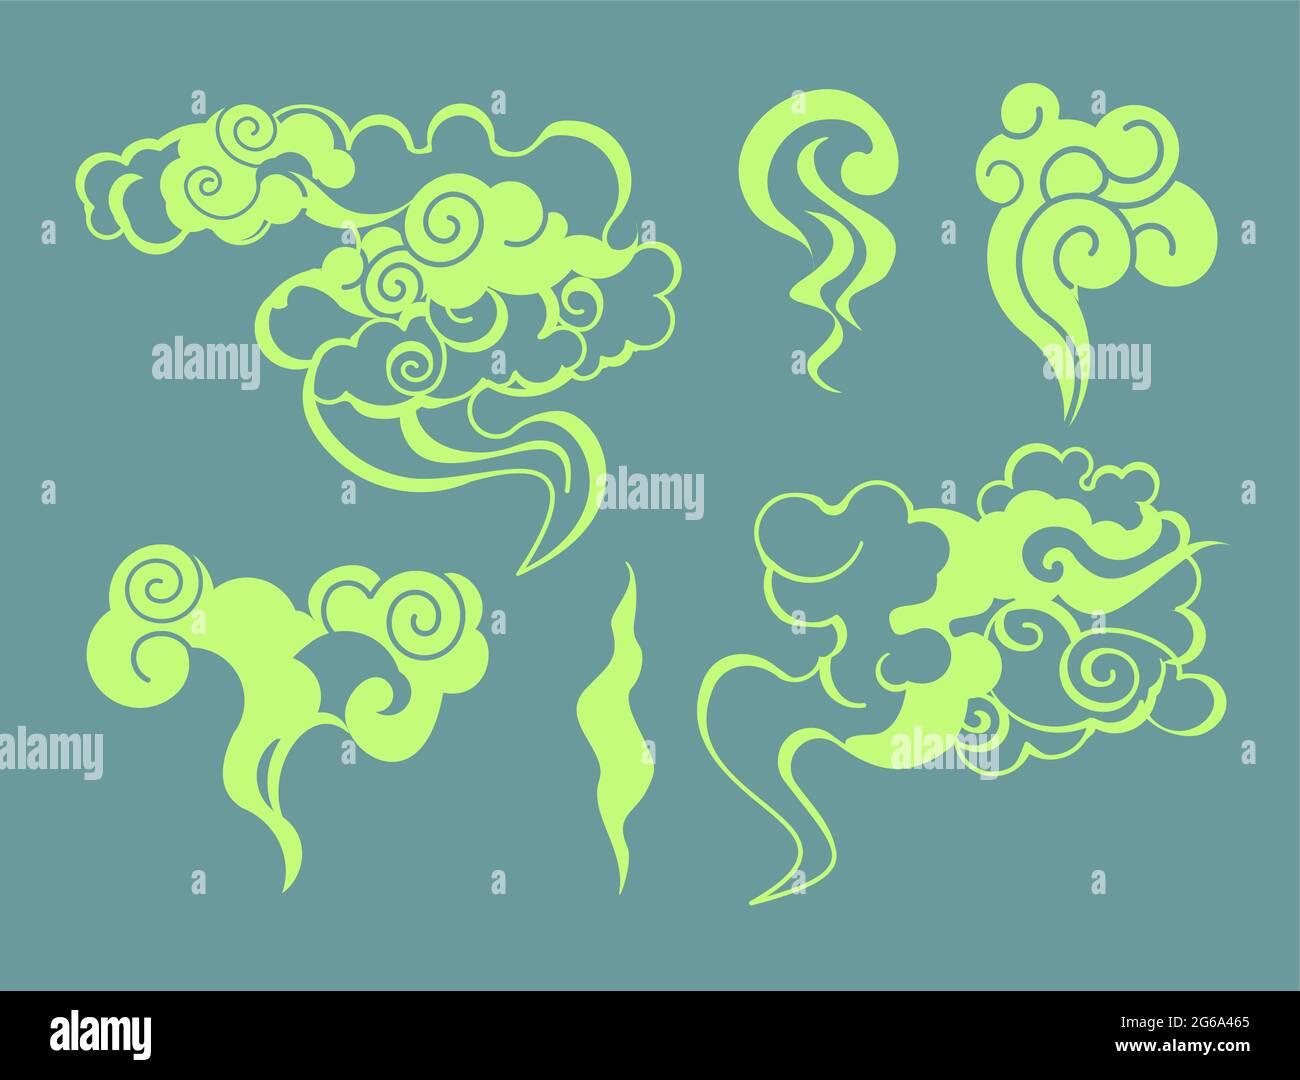 Illustrazione vettoriale del fumo di cartone animato, bolle di odore stinky, raccolta di flussi di aroma, colore verde tossico odore in stile piatto. Illustrazione Vettoriale